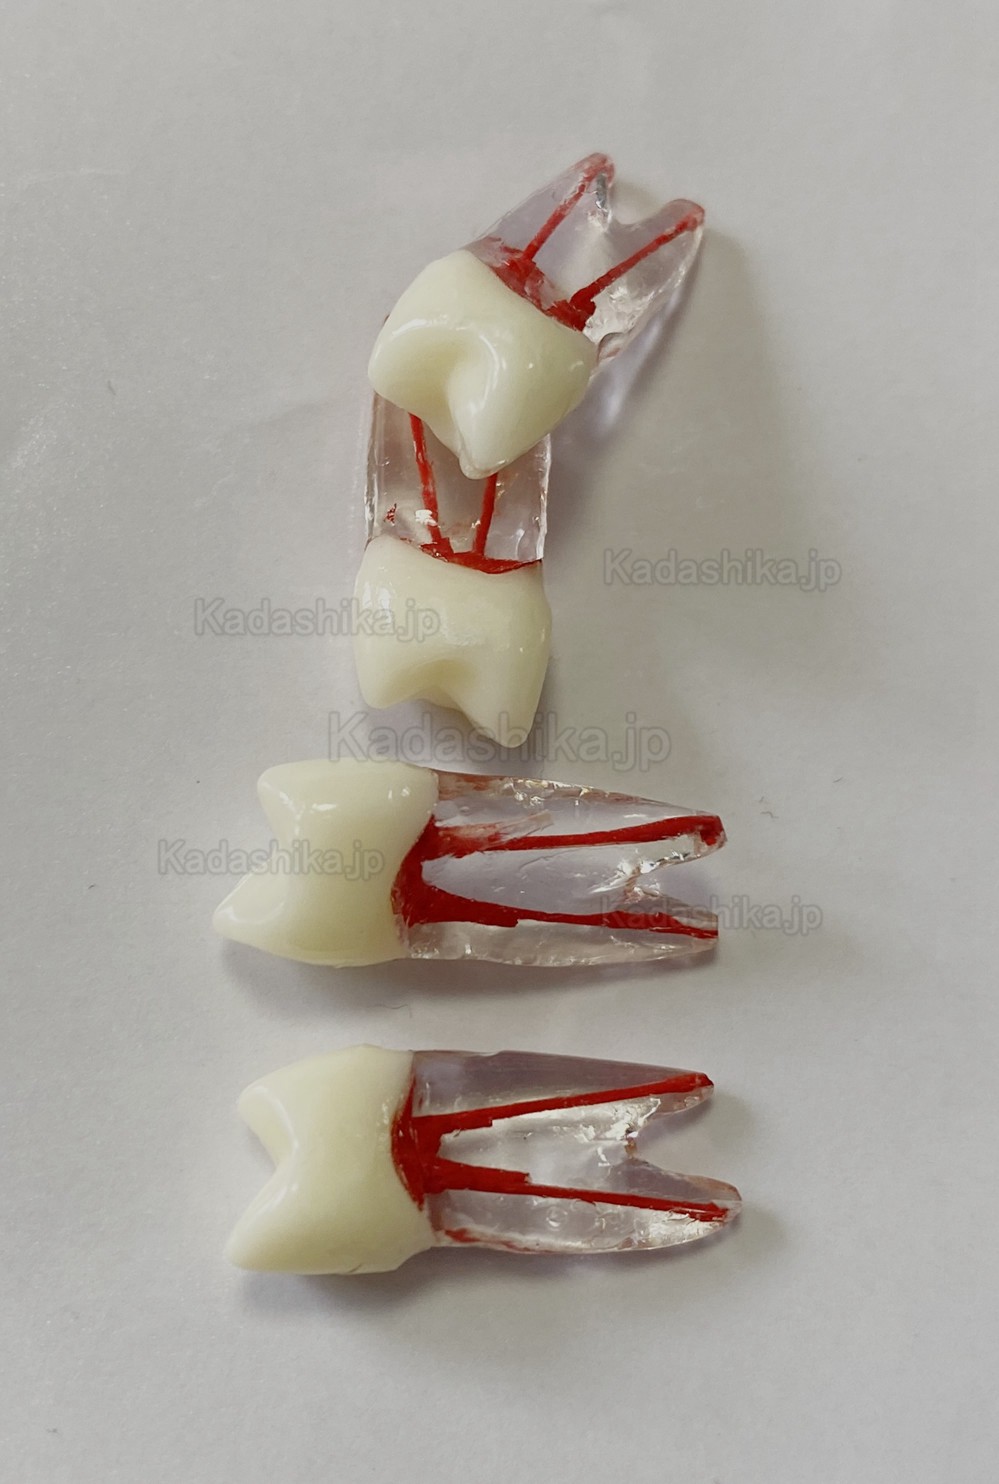 歯内療法実習用複製根2層模型歯 (臼歯上下歯 小臼歯 ルート2/3-根管)